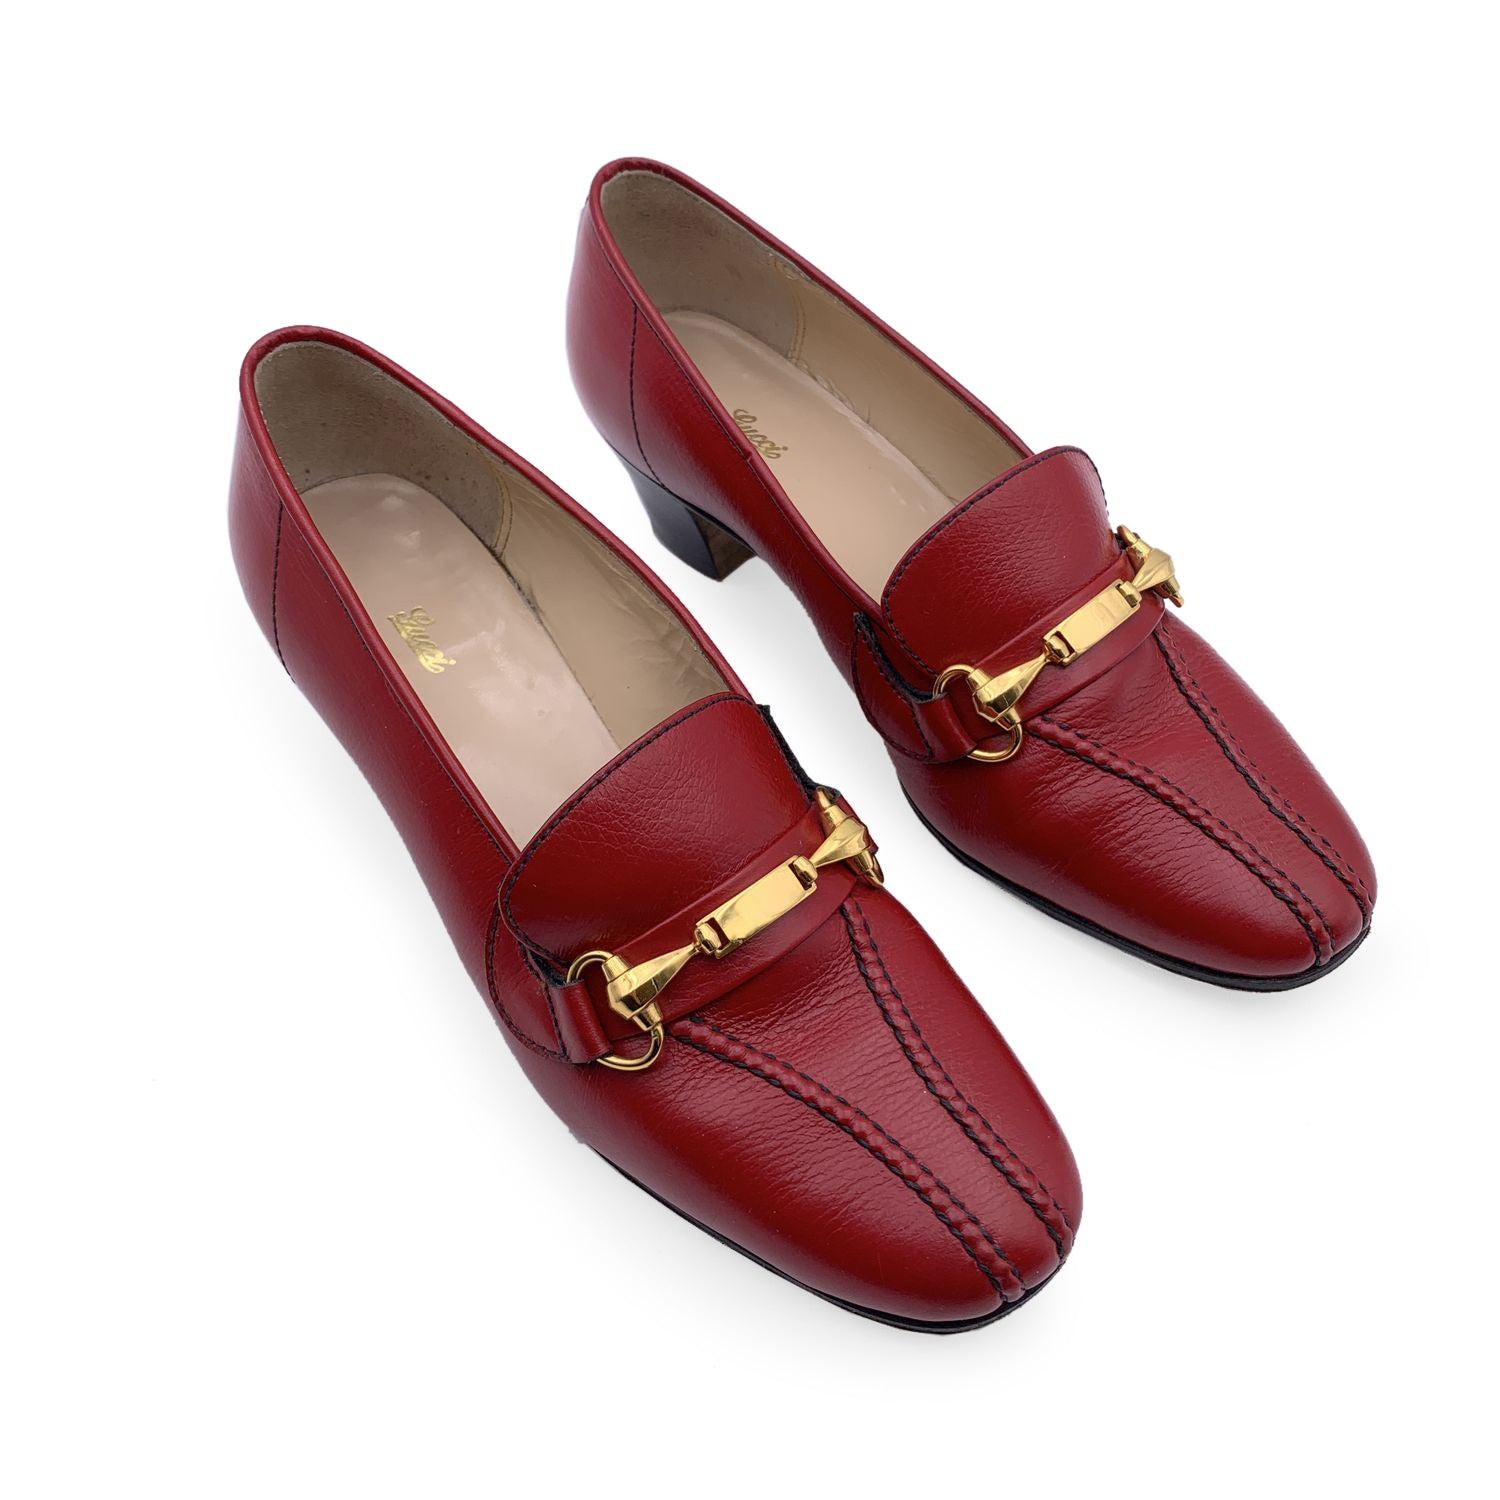 Magnifiques chaussures vintage en cuir rouge de Gucci. Conçues en cuir rouge, elles sont ornées d'un mors en métal doré sur les orteils. Elles sont dotées d'un bout rond et d'un design/One. Semelle en cuir. Fabriquées en Italie. Taille : EU 35.5 (La